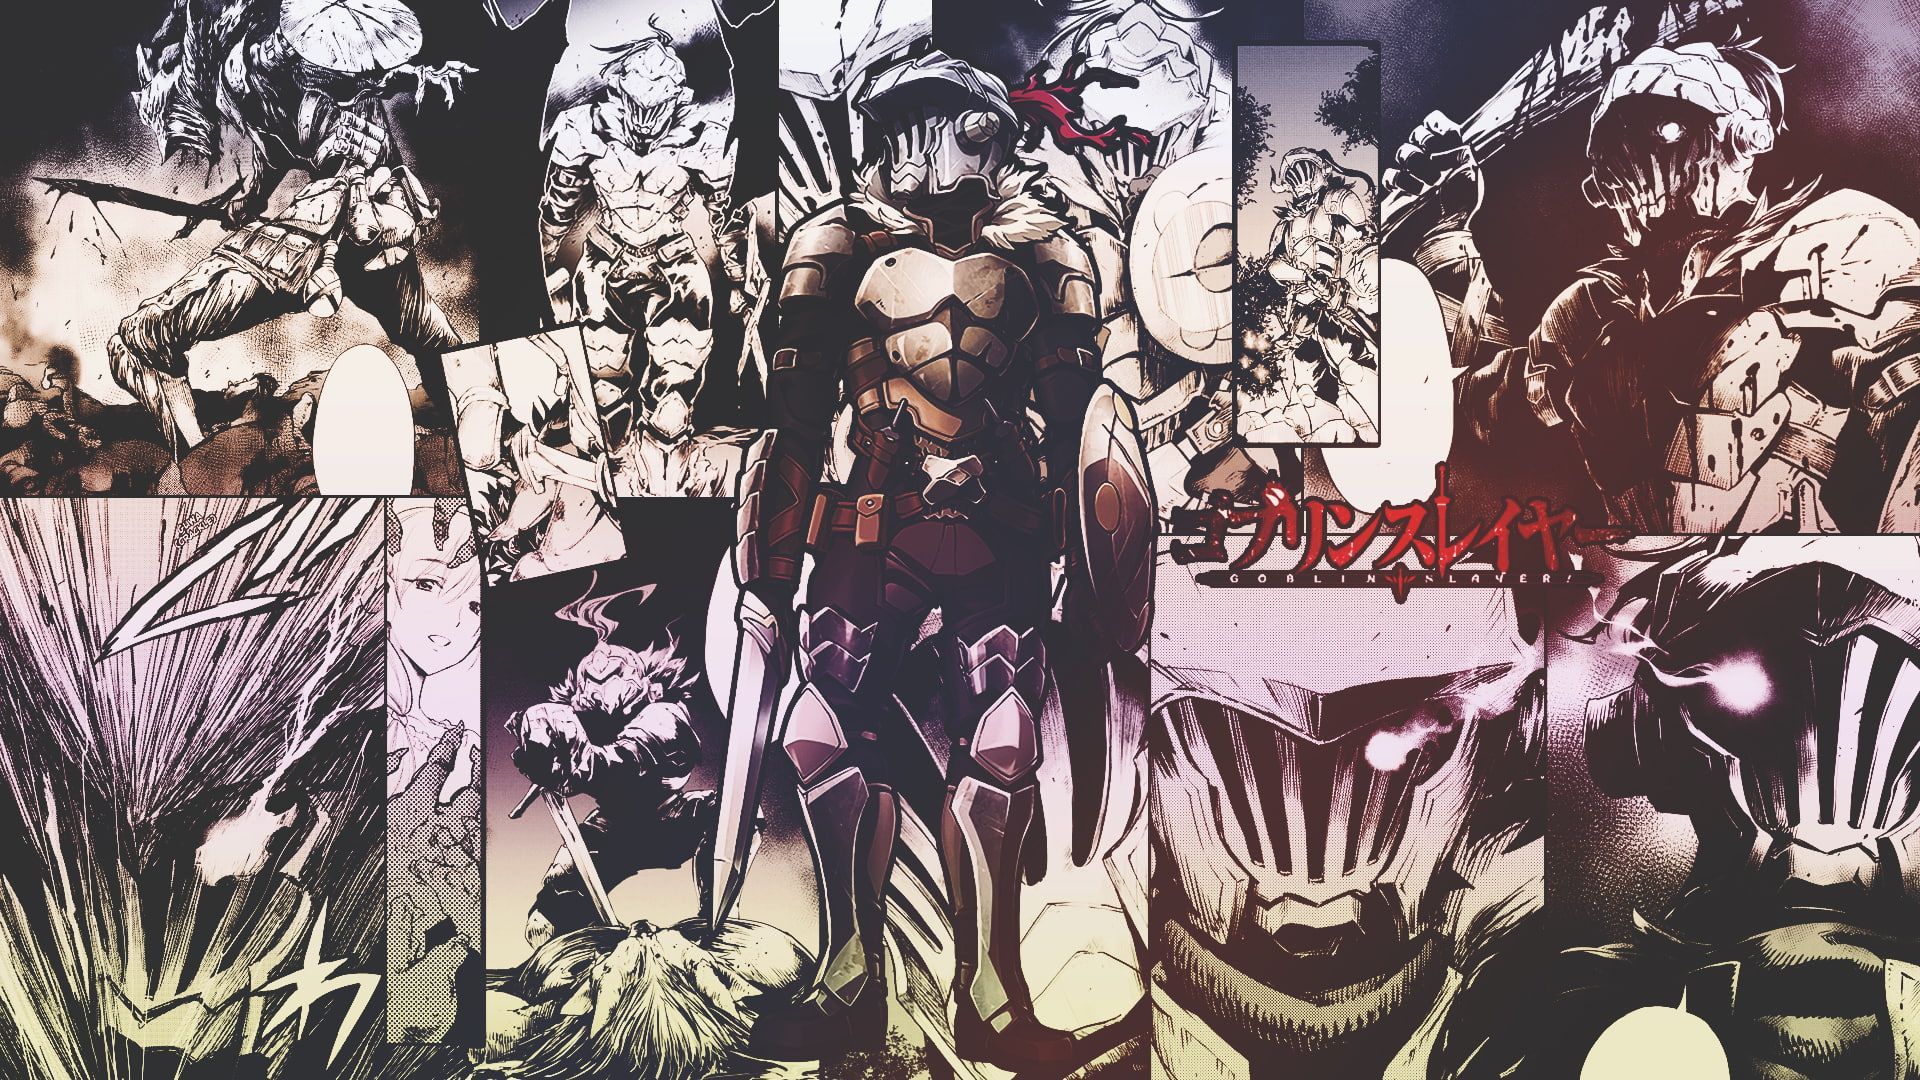 Anime Goblin Slayer P #wallpaper #hdwallpaper #desktop. HD anime wallpaper, Anime wallpaper, Anime